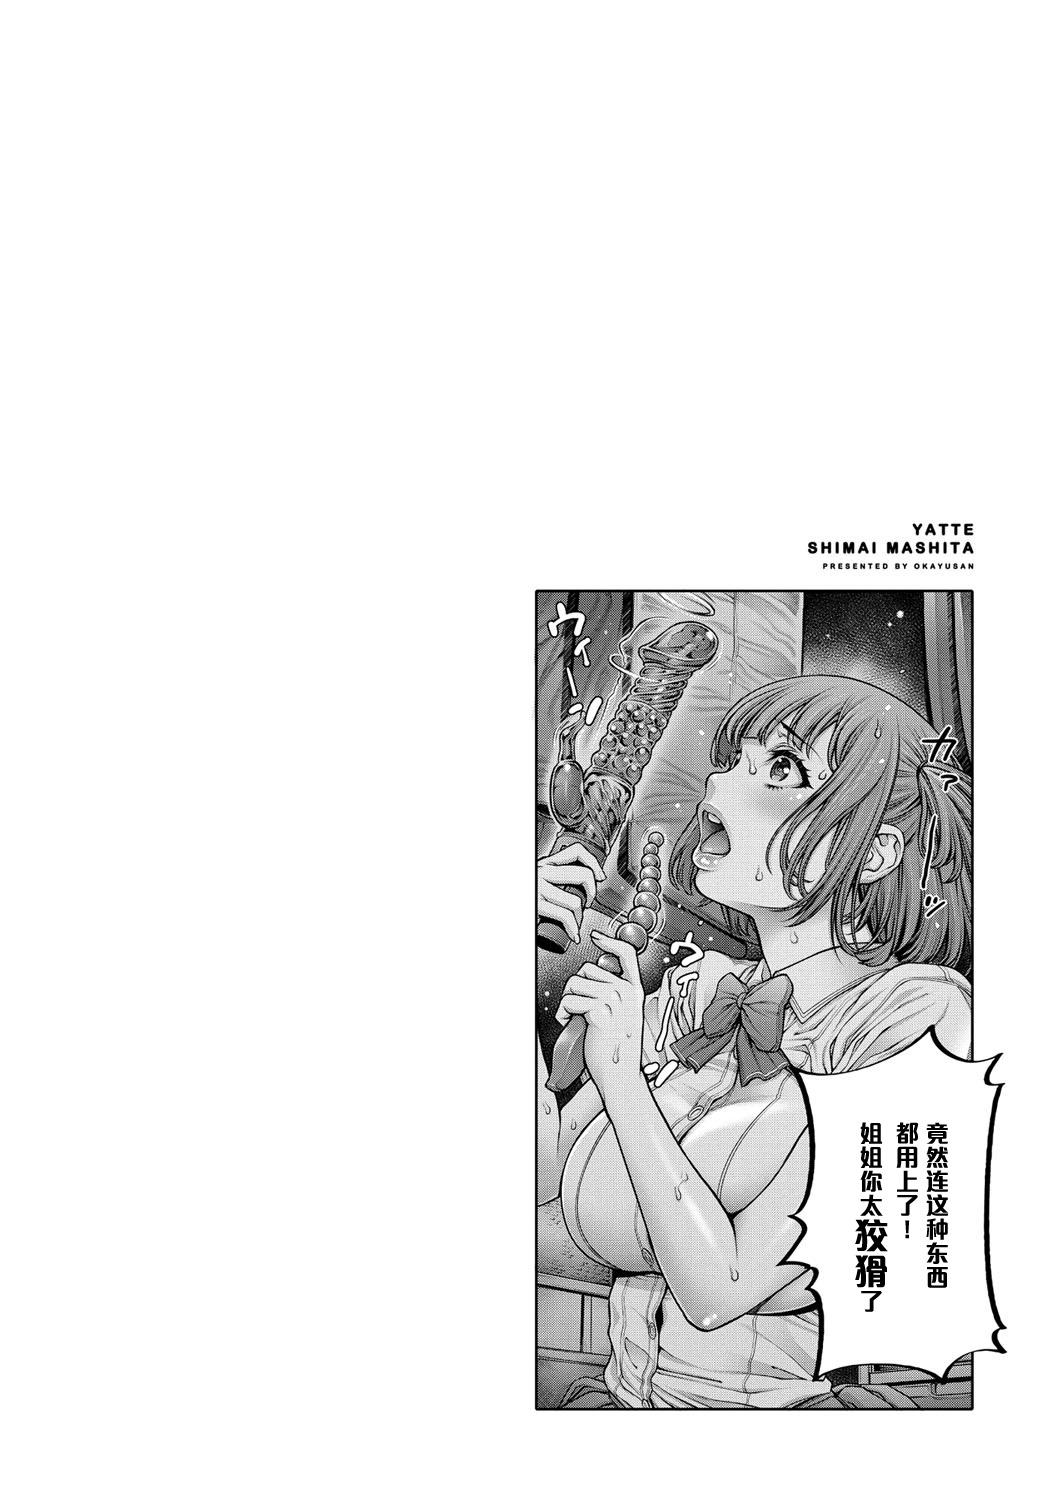 Emo Yatte Shimai Mashita 2 Sentones - Page 22